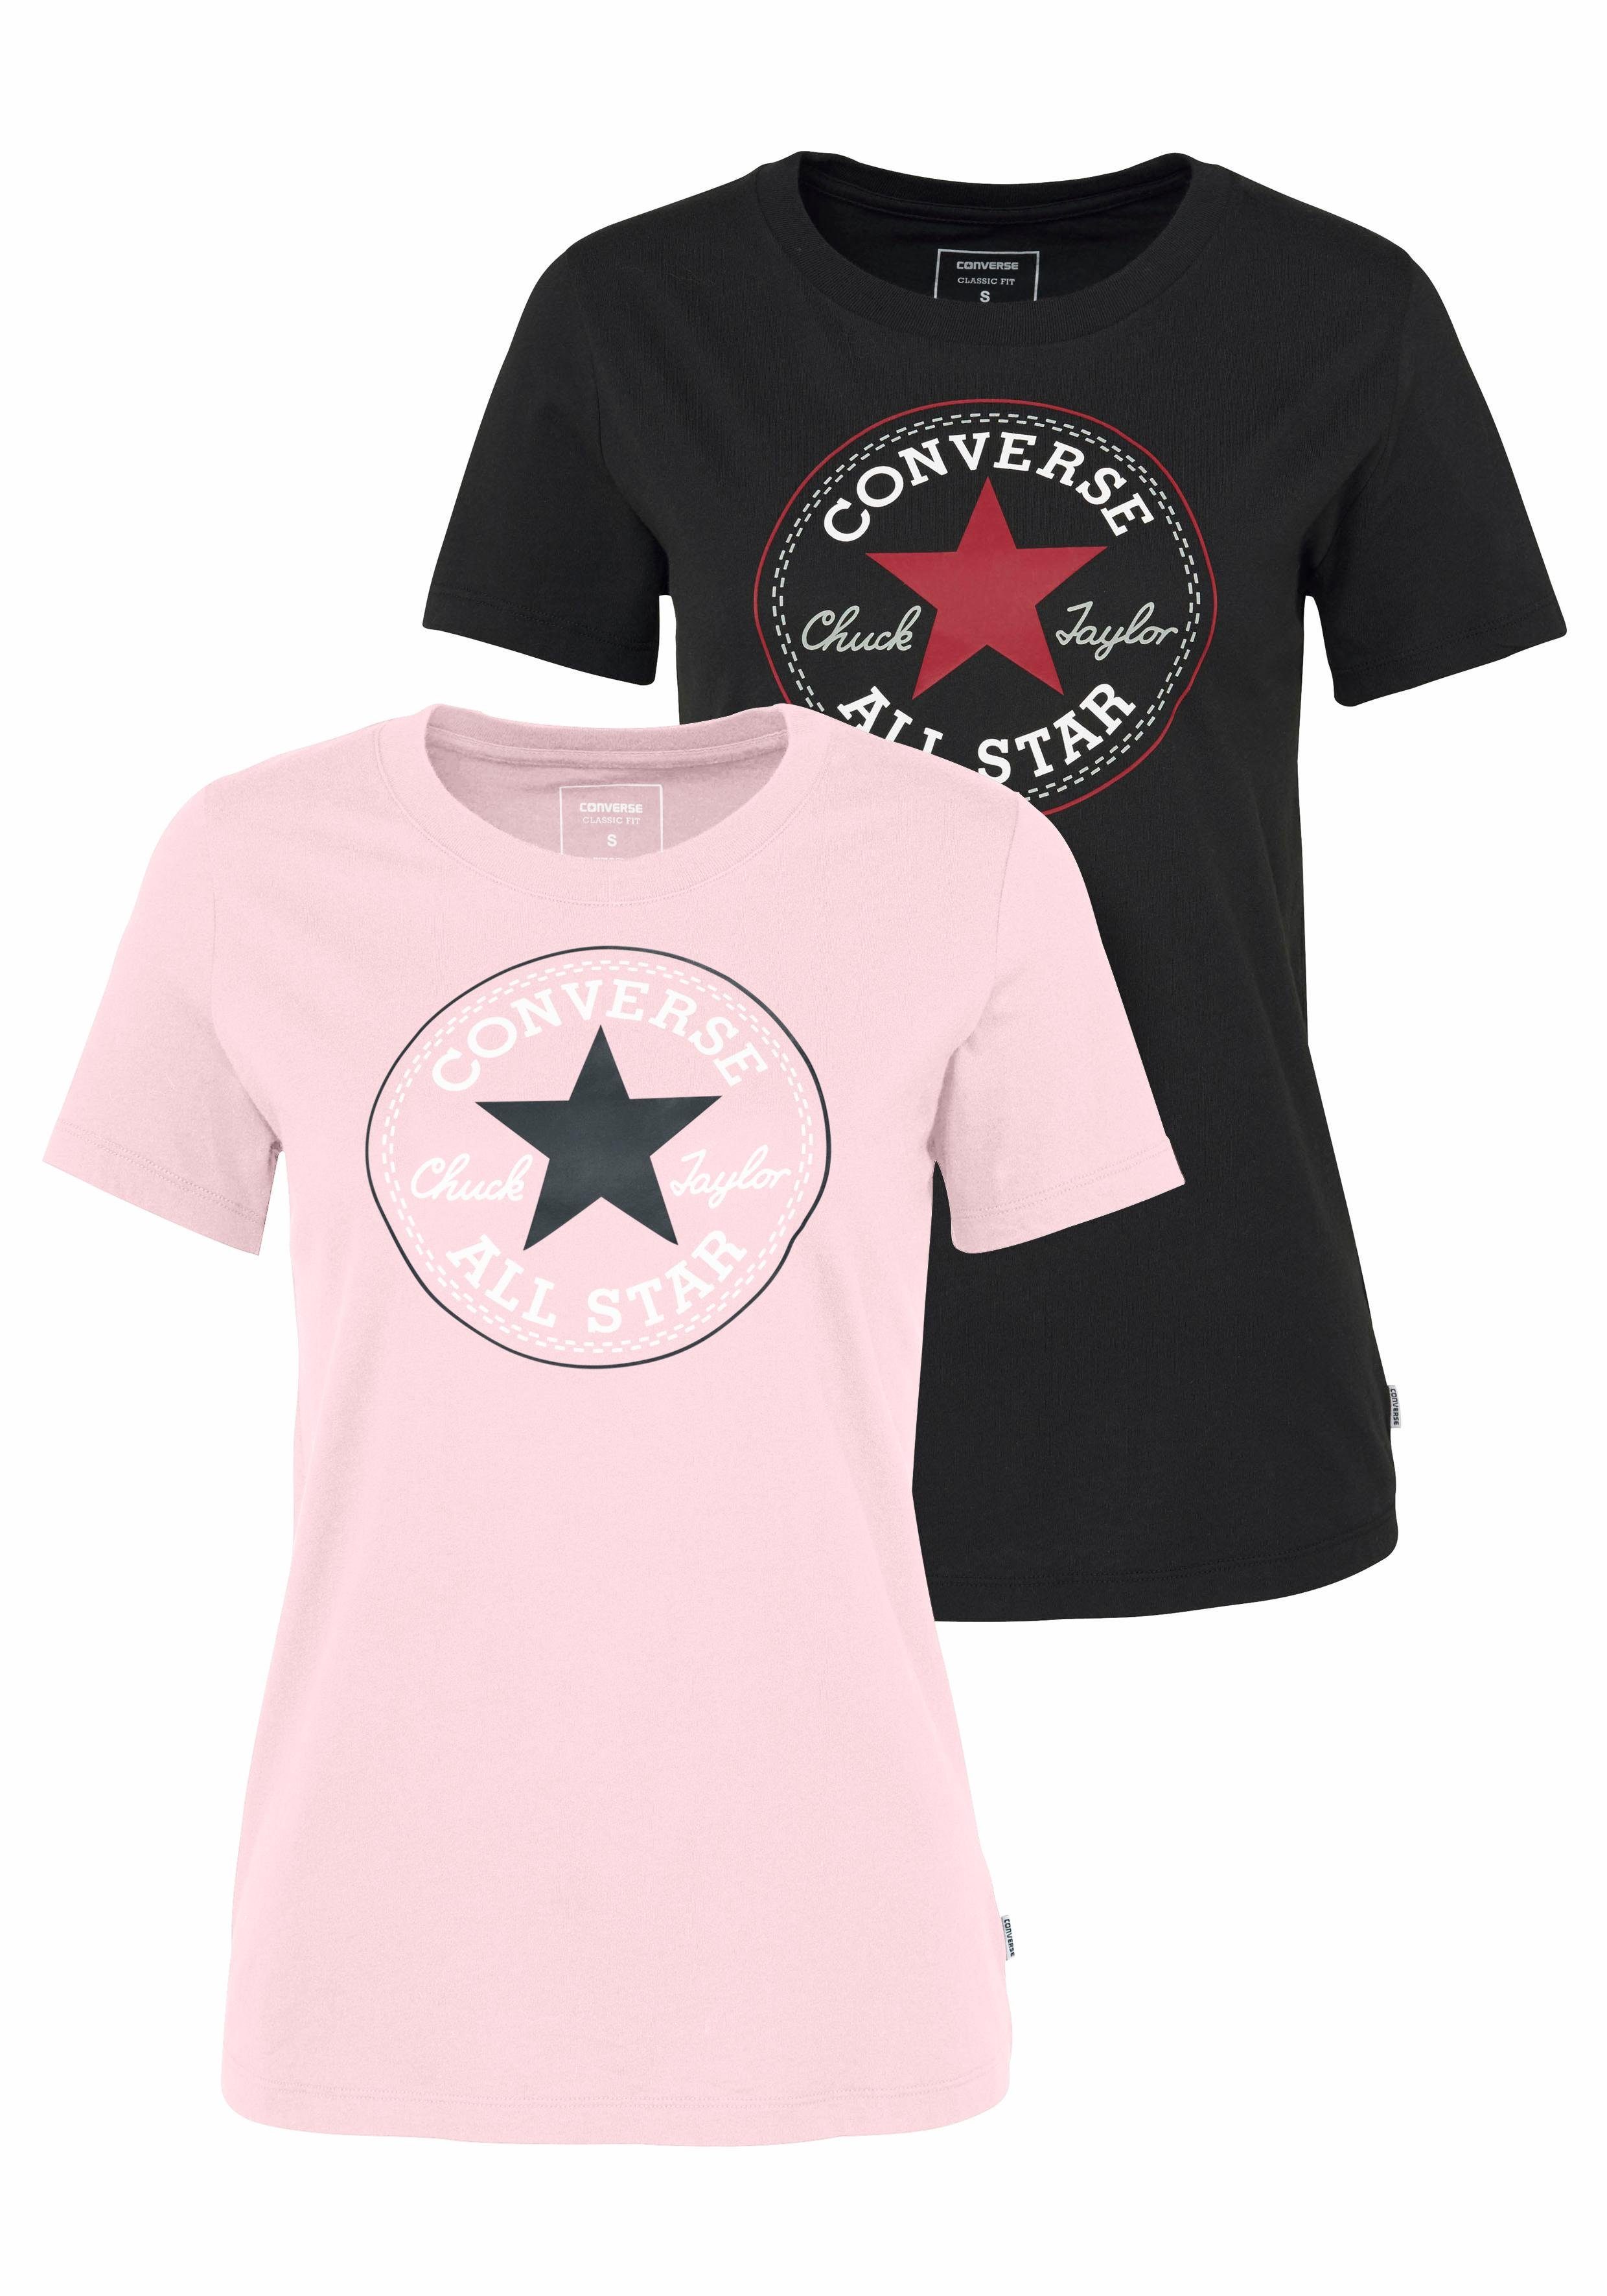 converse t shirt pink